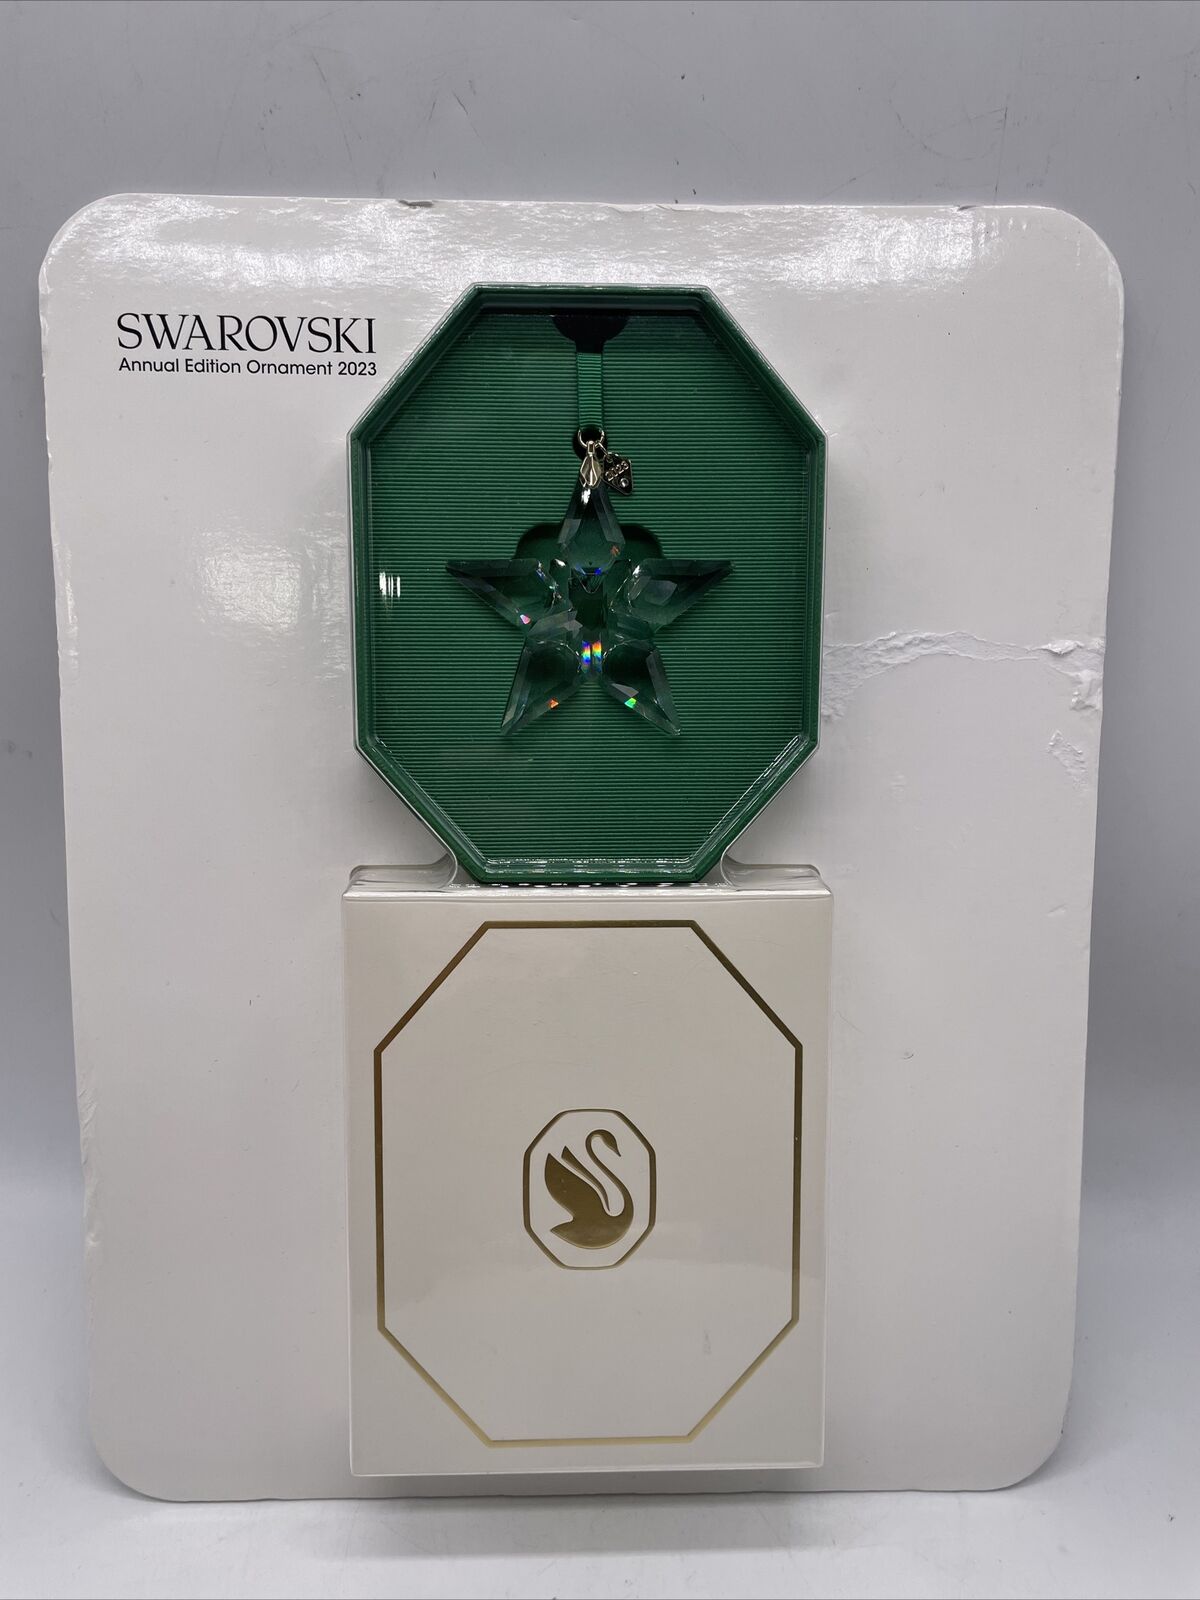 Swarovski Annual Edition 2023 Ornament, Clear Crystal Star, Item # 2002023